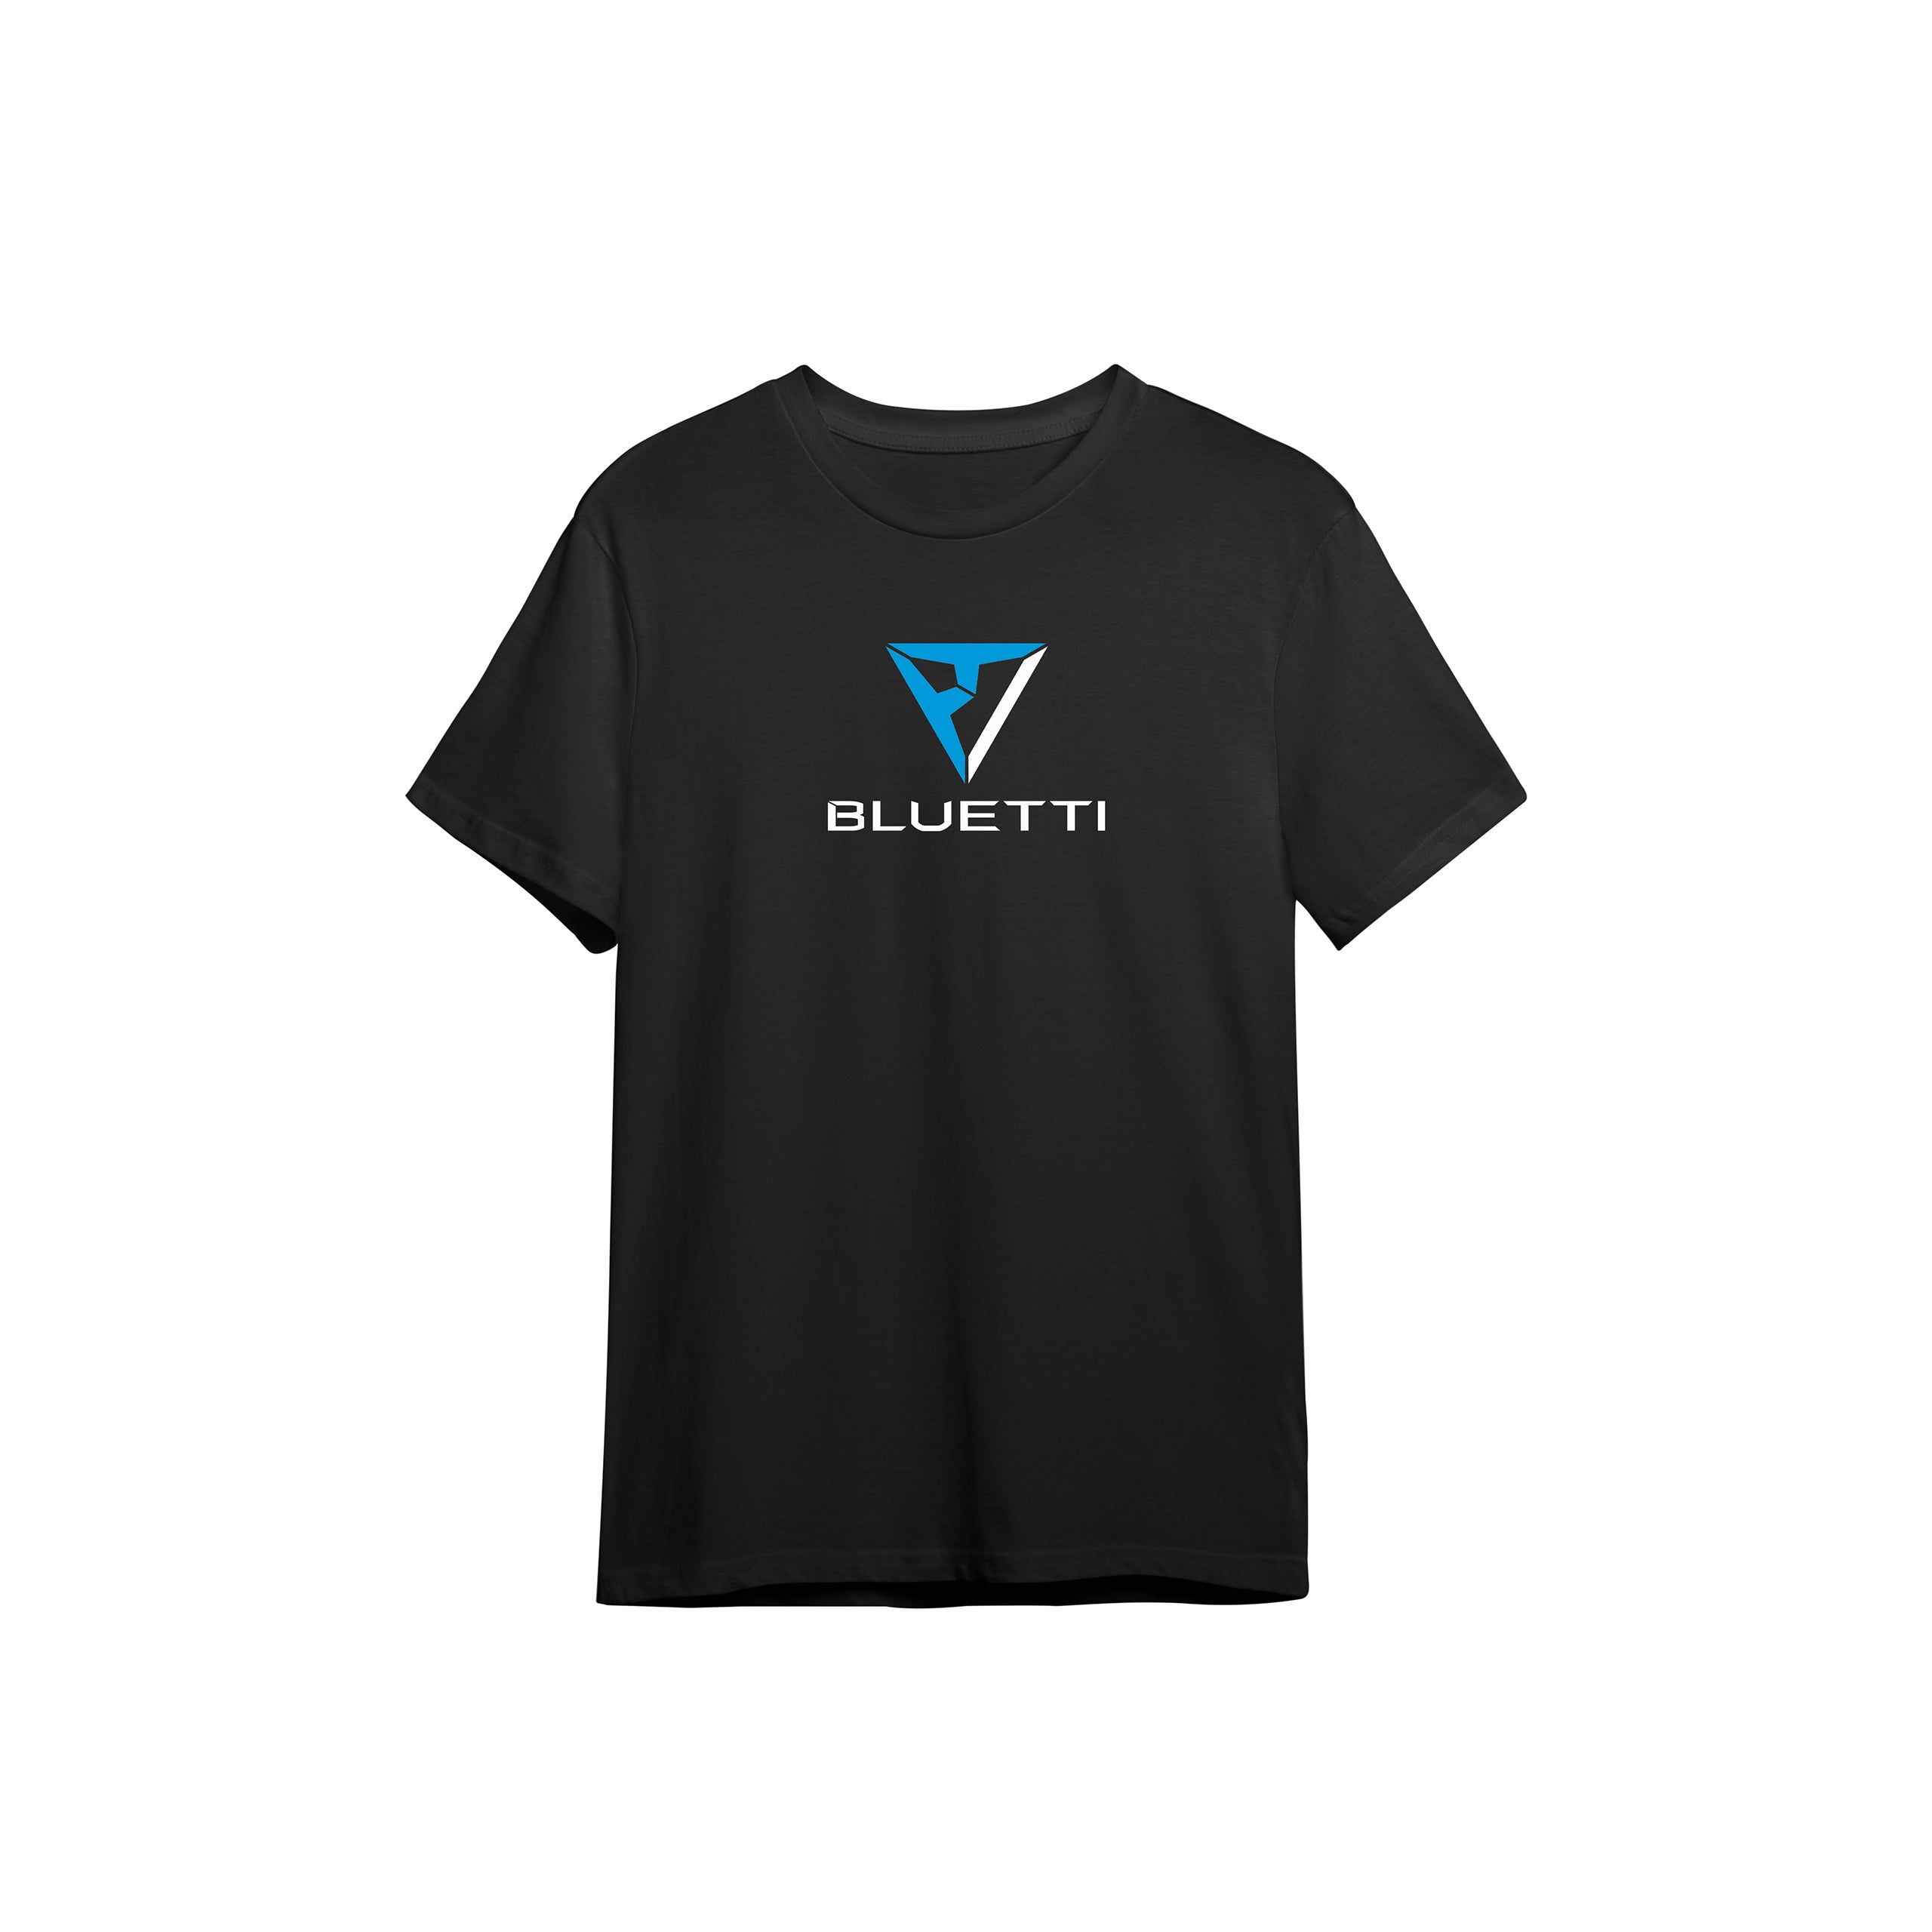 BLUETTI T-shirt, 2XL / Black / Adult